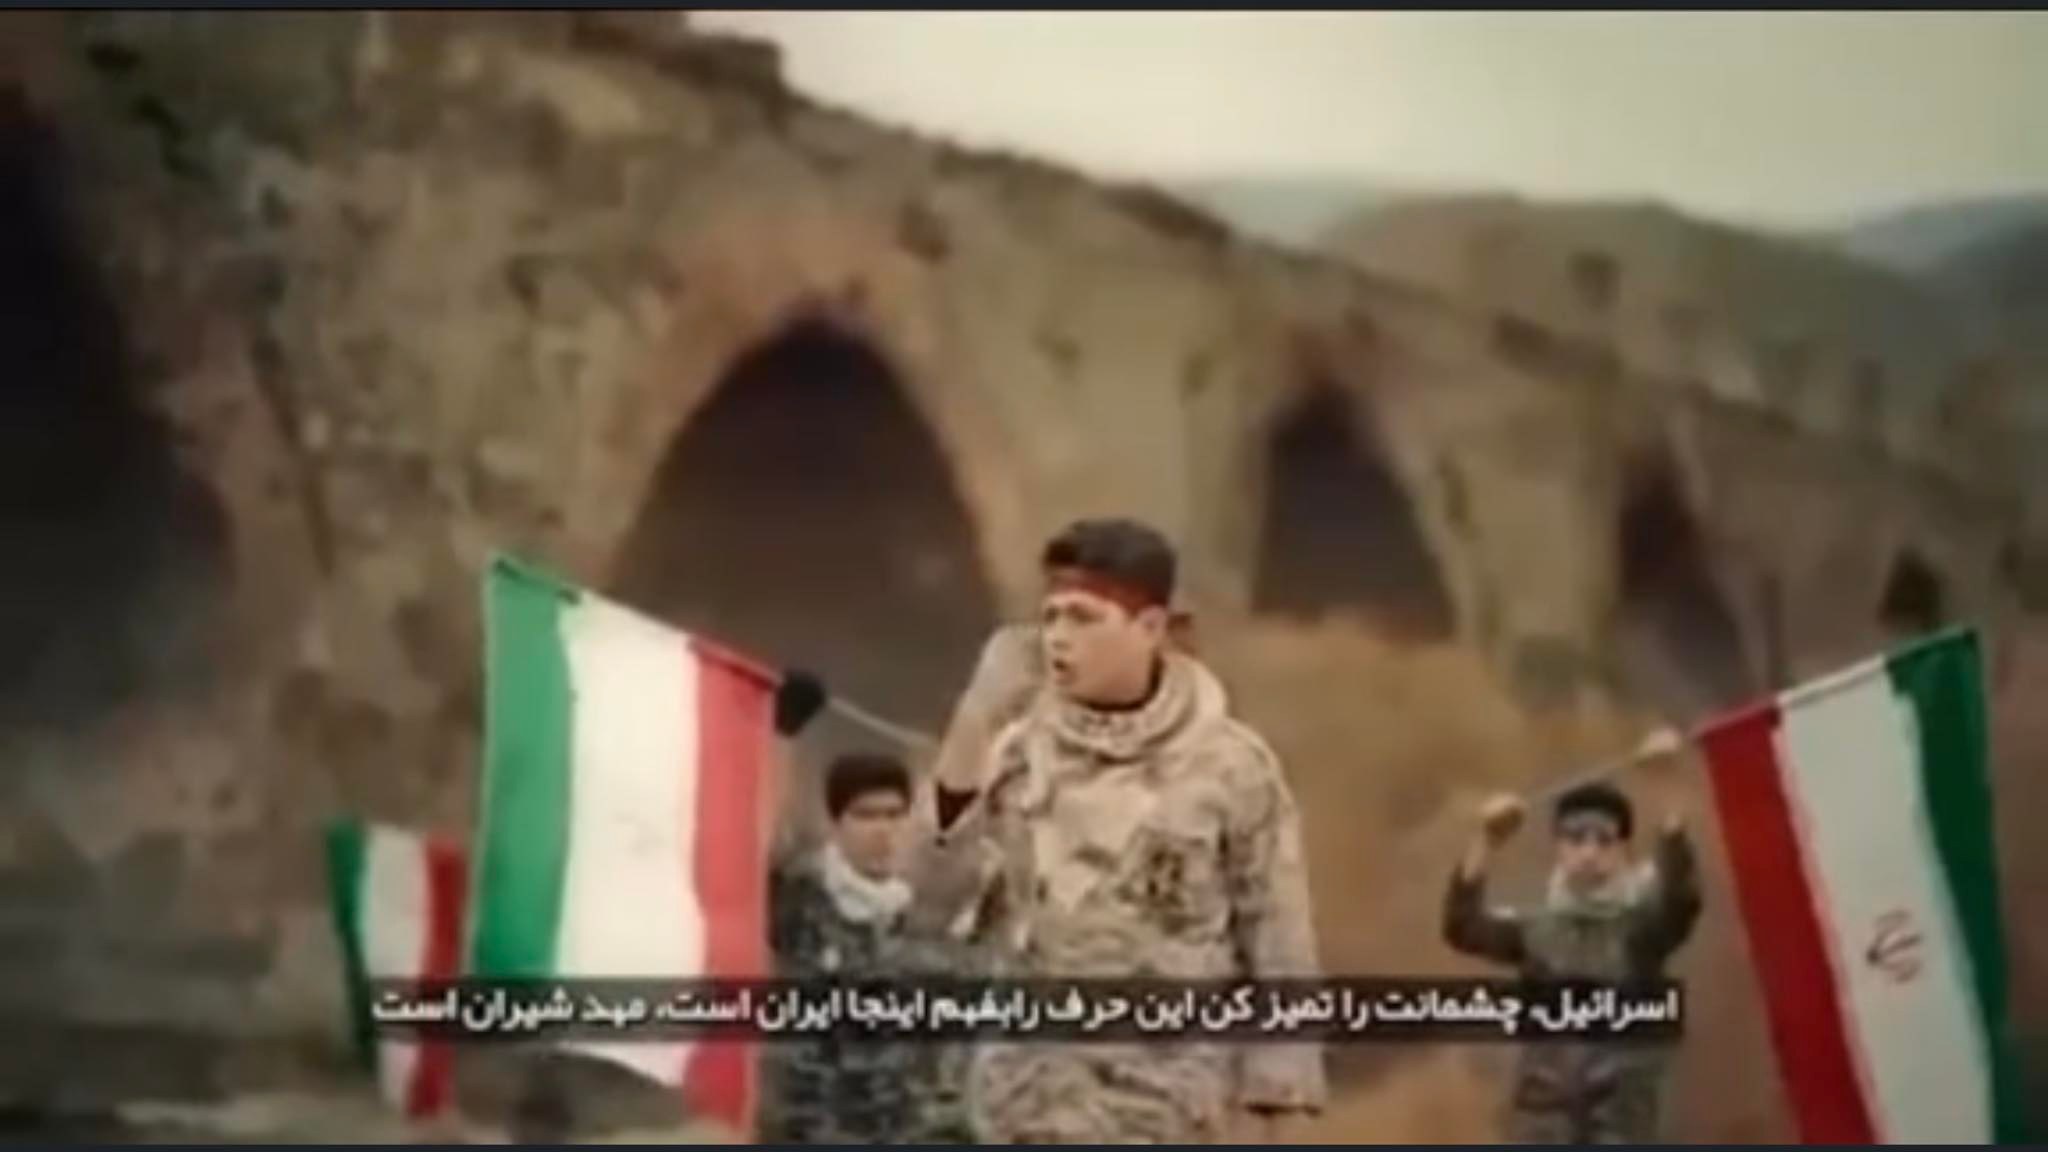 Տեսանյութ.Մի՛ փորեք ձեր սեփական գերեզմանը.Իրանում տեսահոլովակ են նկարել Արաքսի ափին` Ադրբեջանի հետ սահմանին` զգուշացնելով Ադրբեջանին